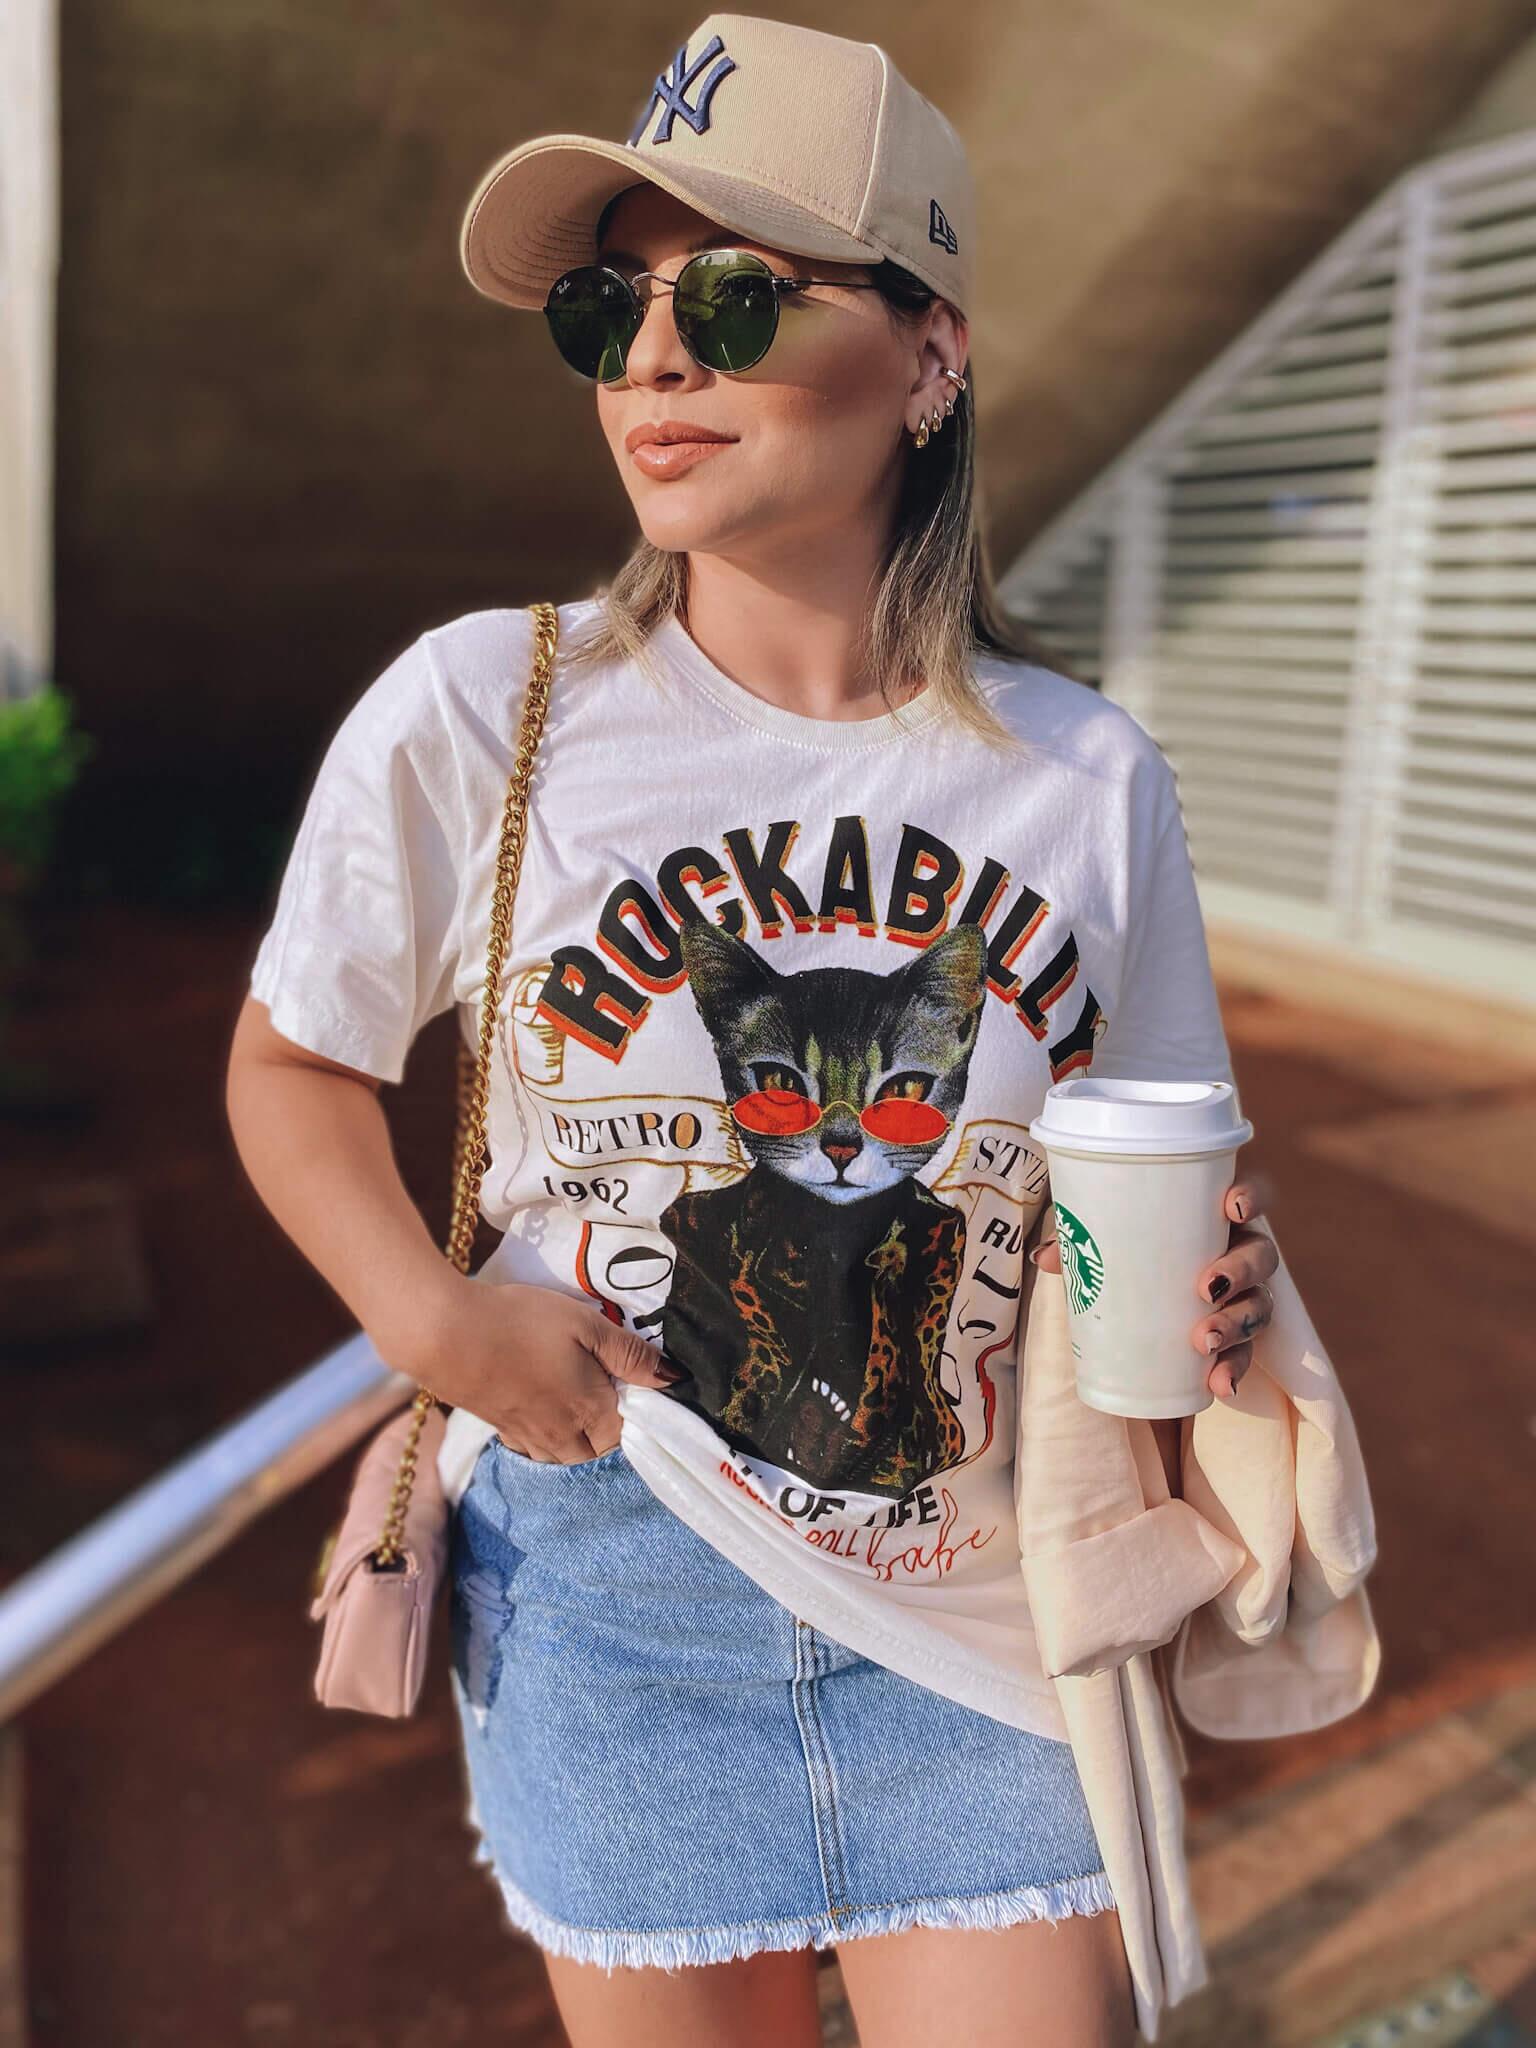 Comprar T-shirt Feminina Boyfriend Cat - a partir de R$85,40